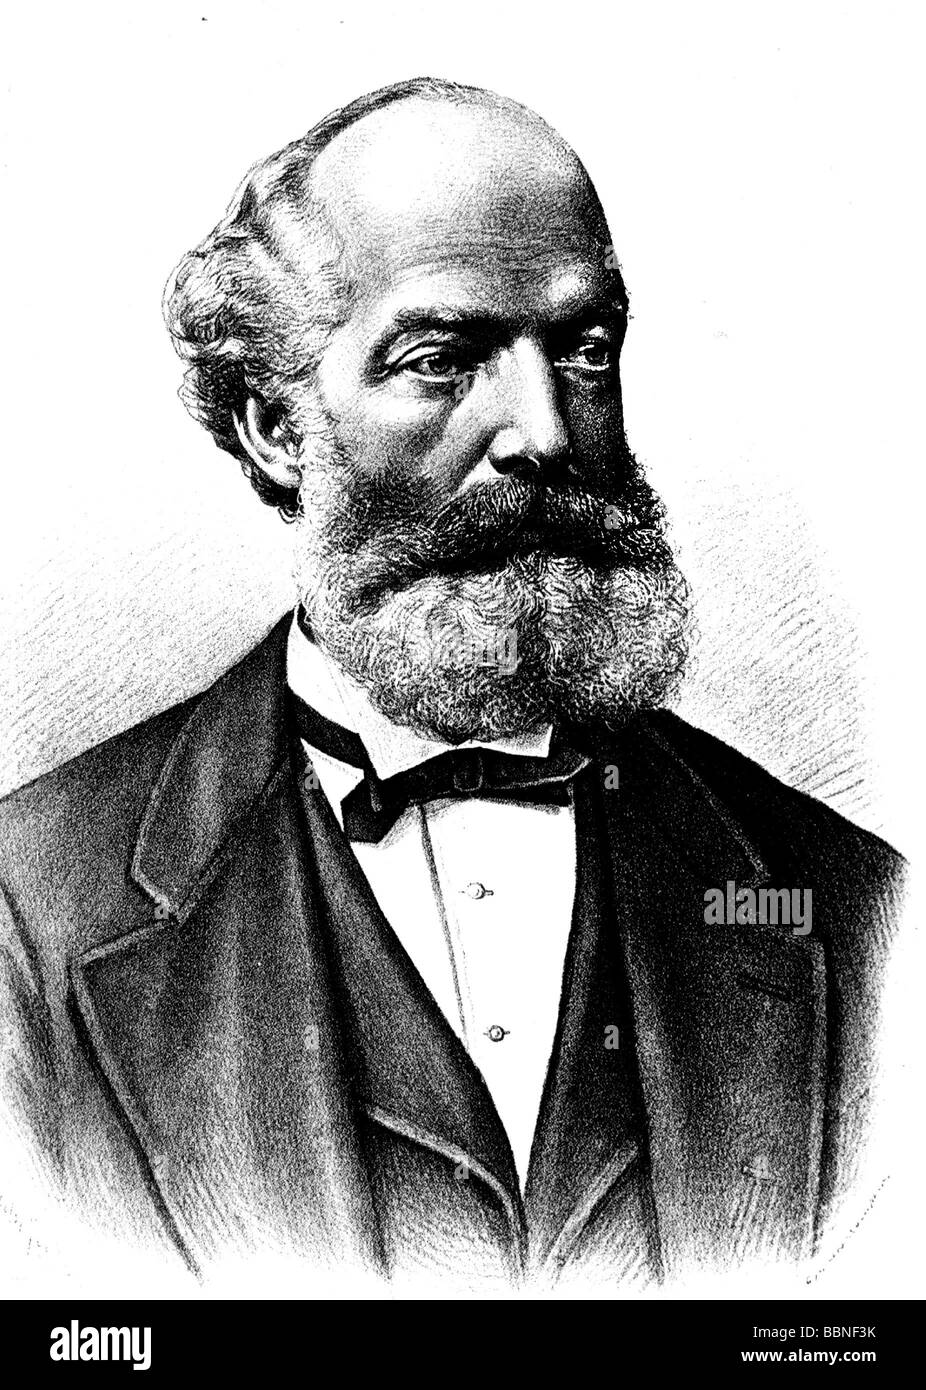 Kekule von Stradonitz, Friedrich August, 7.9.1829 - 13.7.1896, portrait, lithograph, late 19th century, , Stock Photo